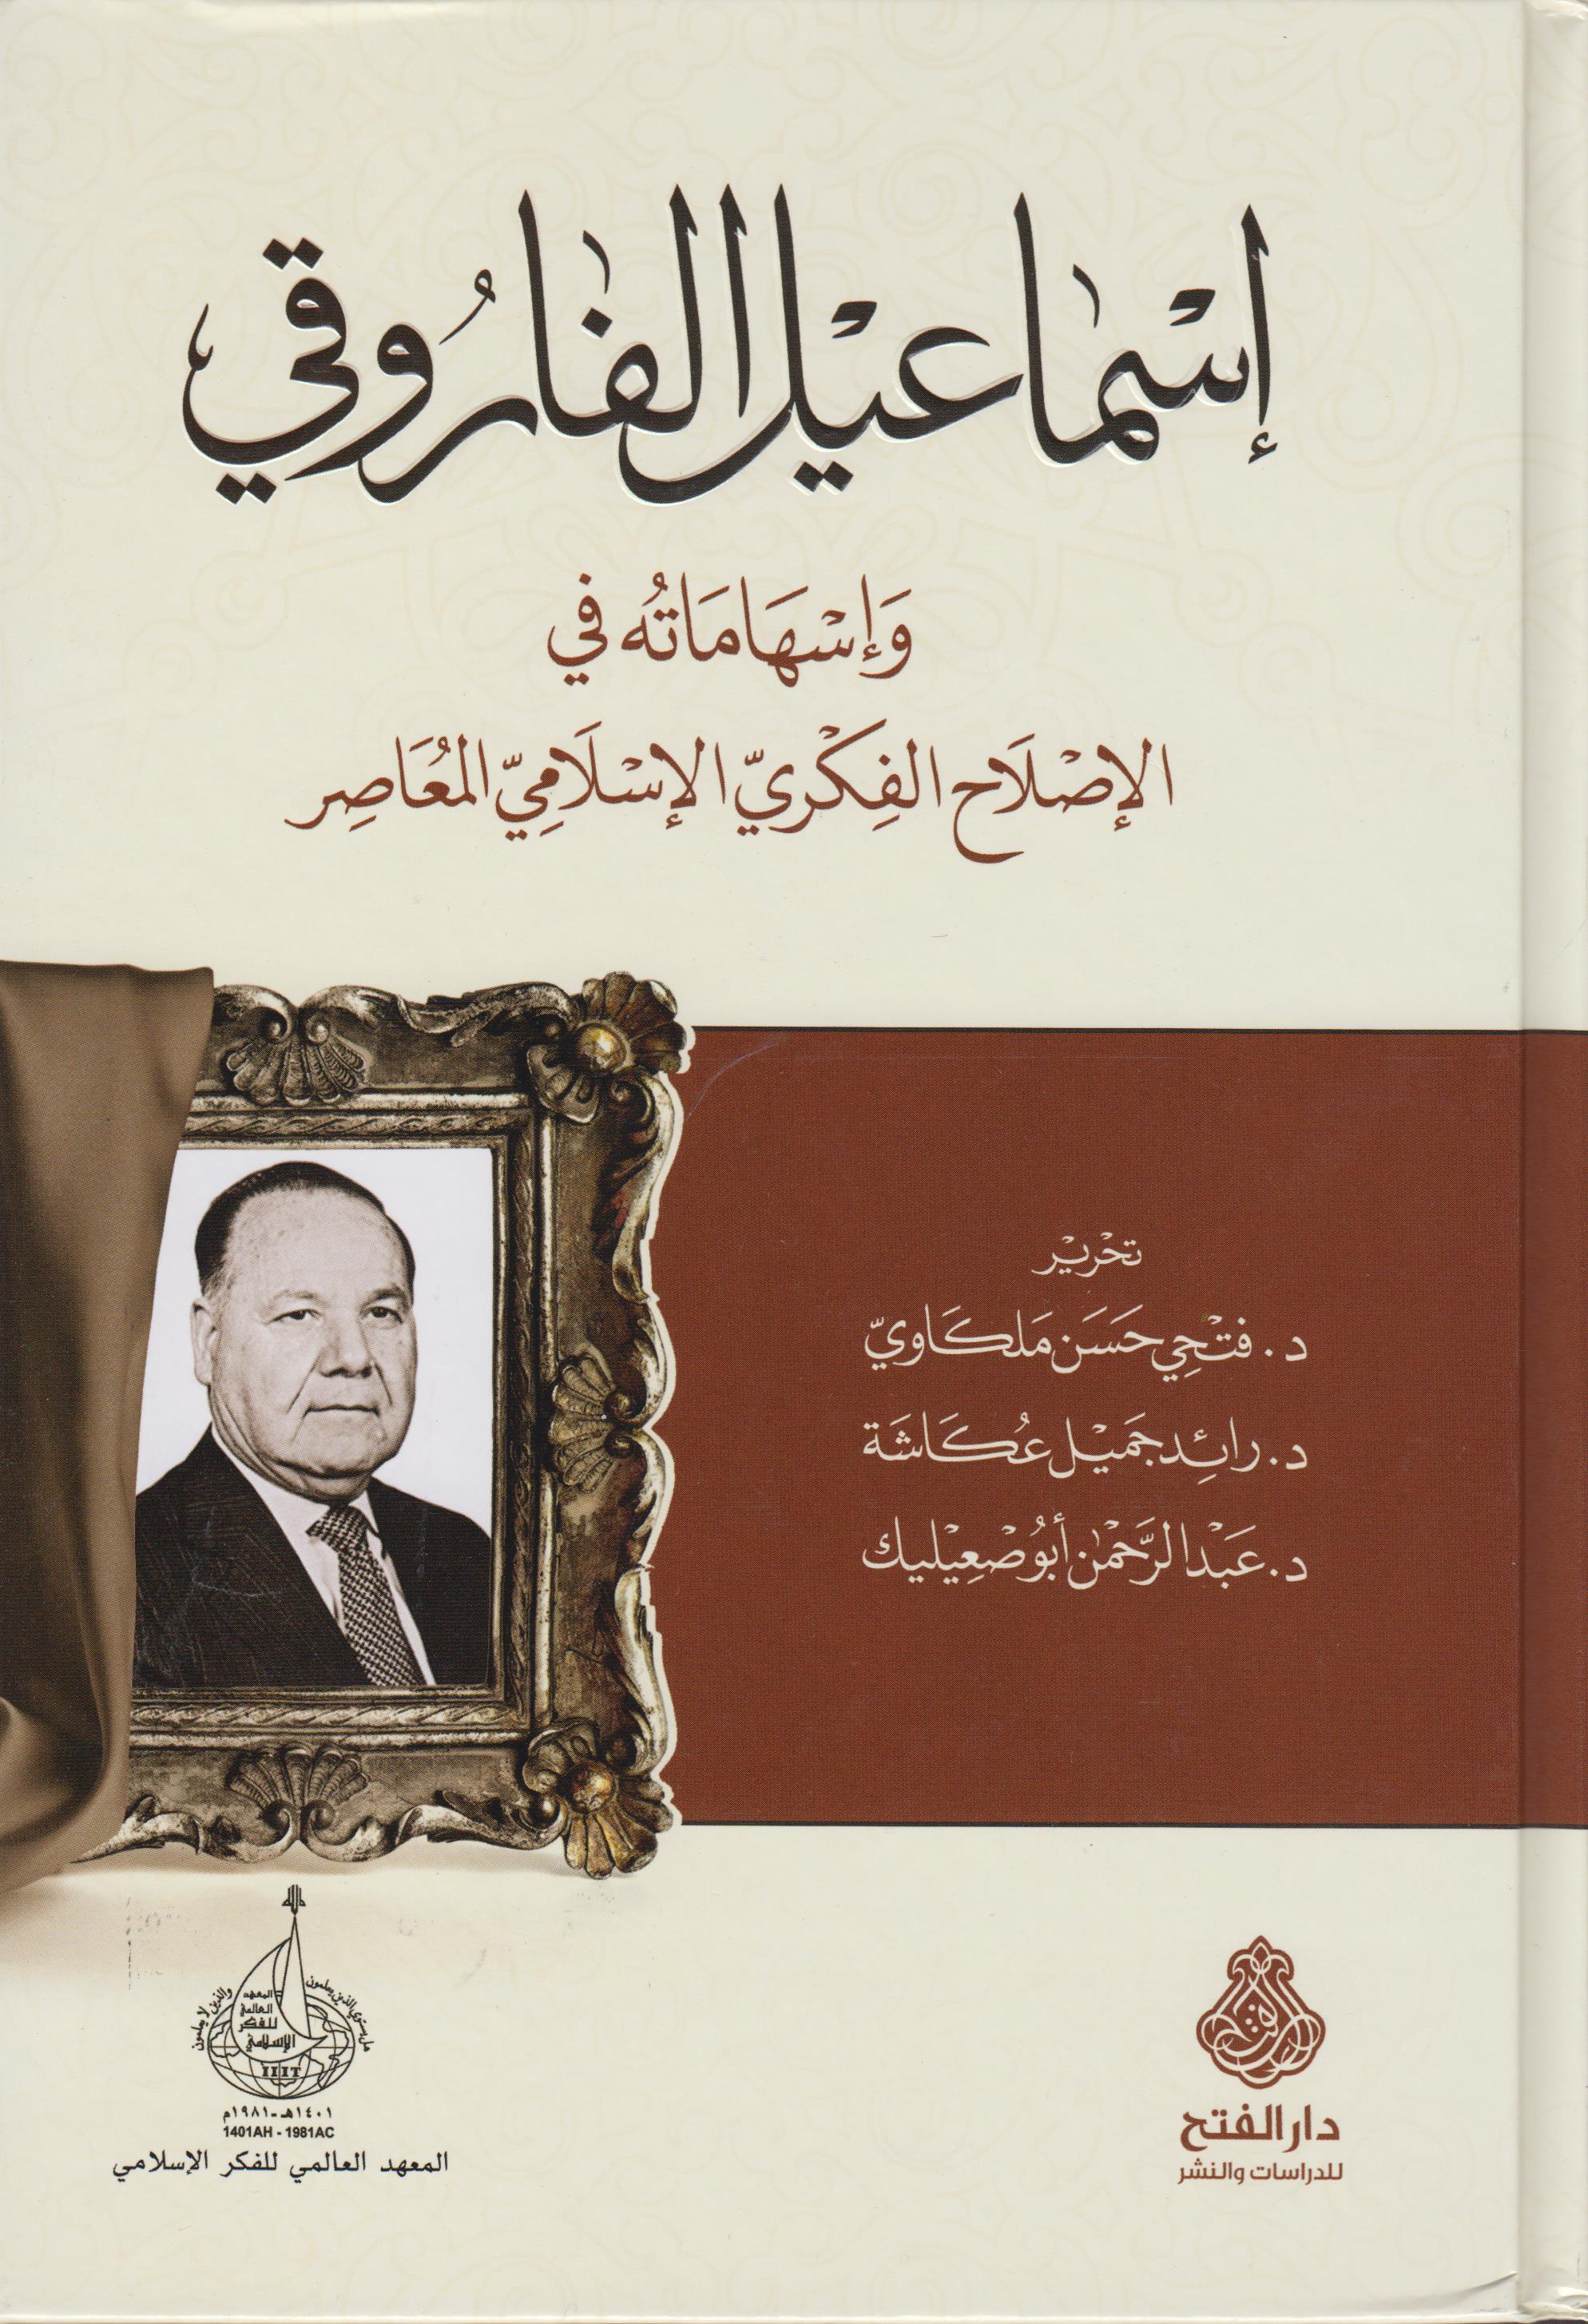 إسماعيل الفاروقي وإسهاماته في الإصلاح الفكري الإسلامي المعاصر